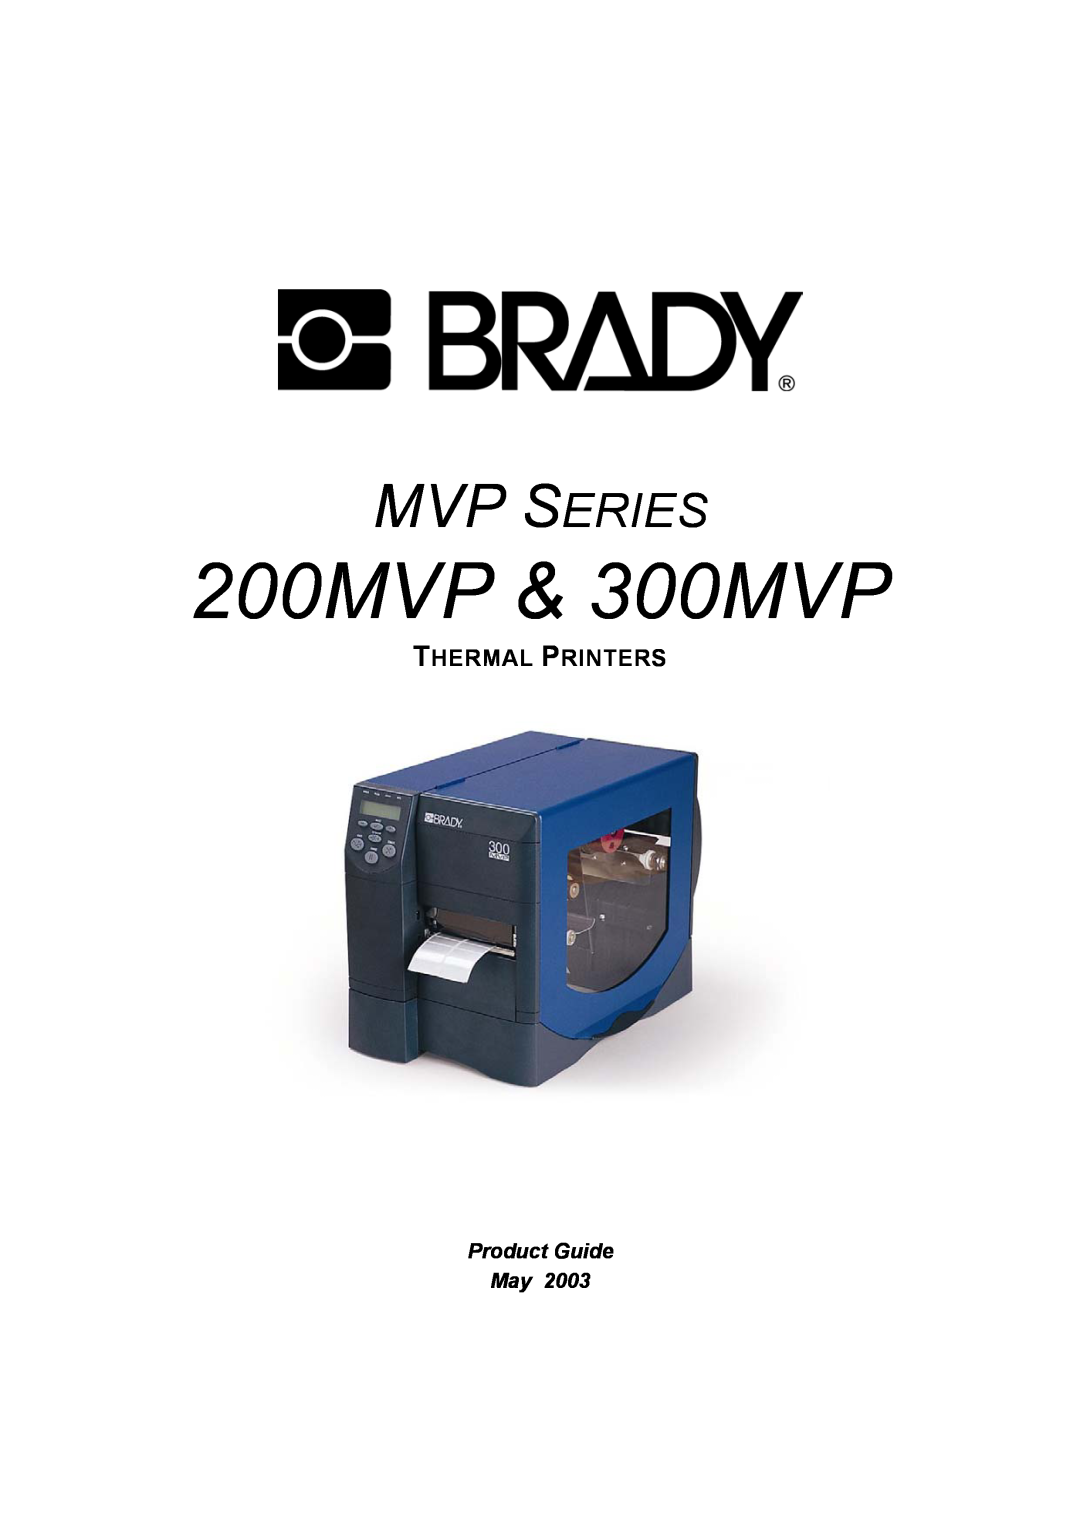 Brady manual Thermal Printers, Product Guide May, 200MVP & 300MVP, Mvp Series 